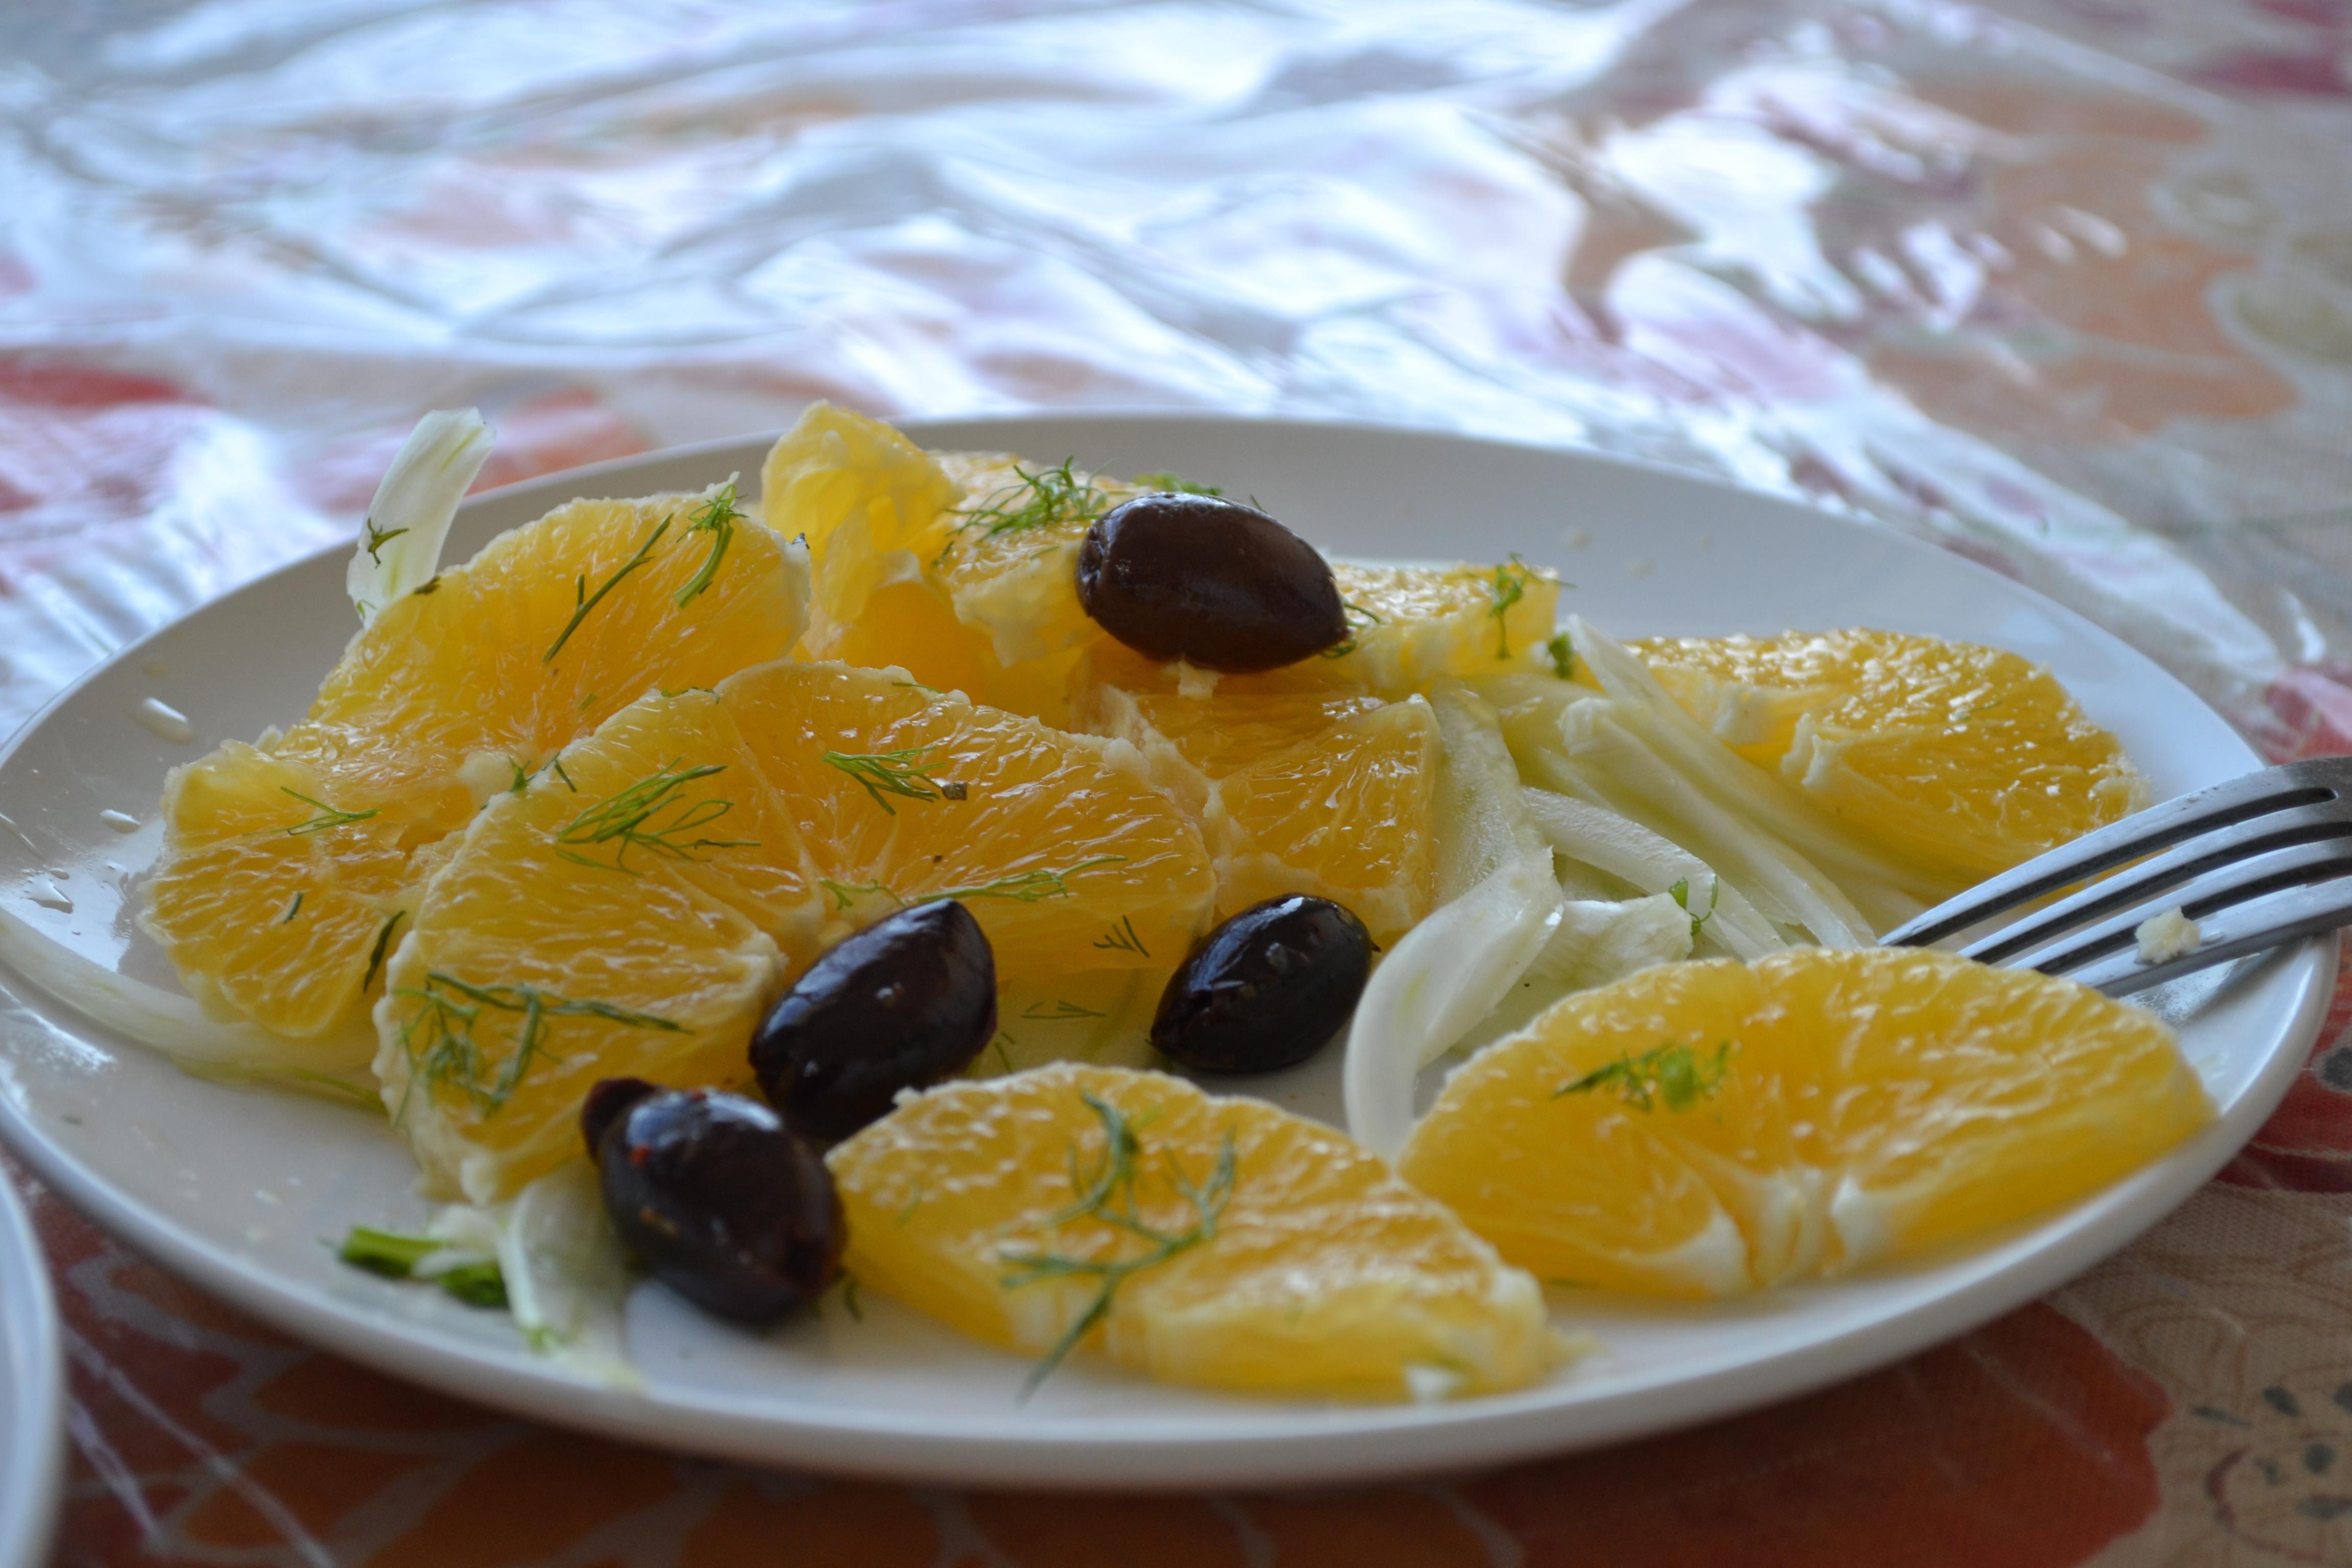 Fennel + orange + olives + dill